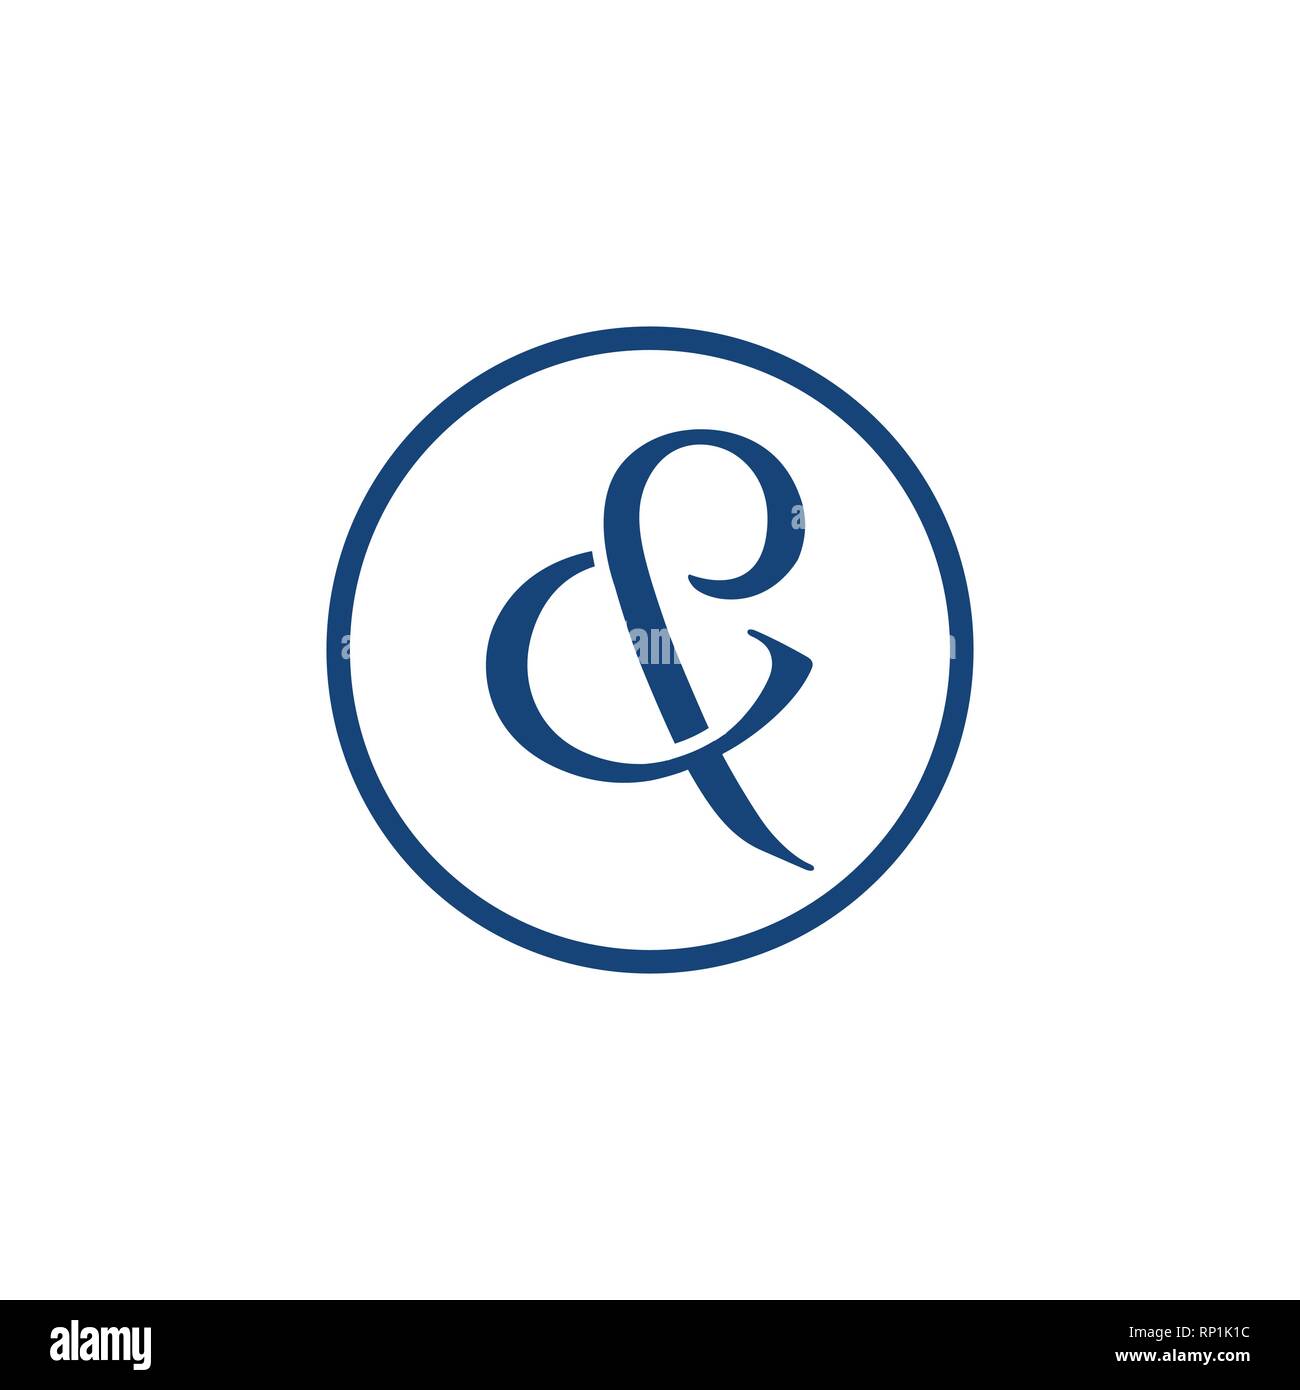 C und P schreiben Erste alphabet Logo Design Template Element. Abstrakte C und P schreiben Logo mit Kreis Hintergrund Form Stock Vektor